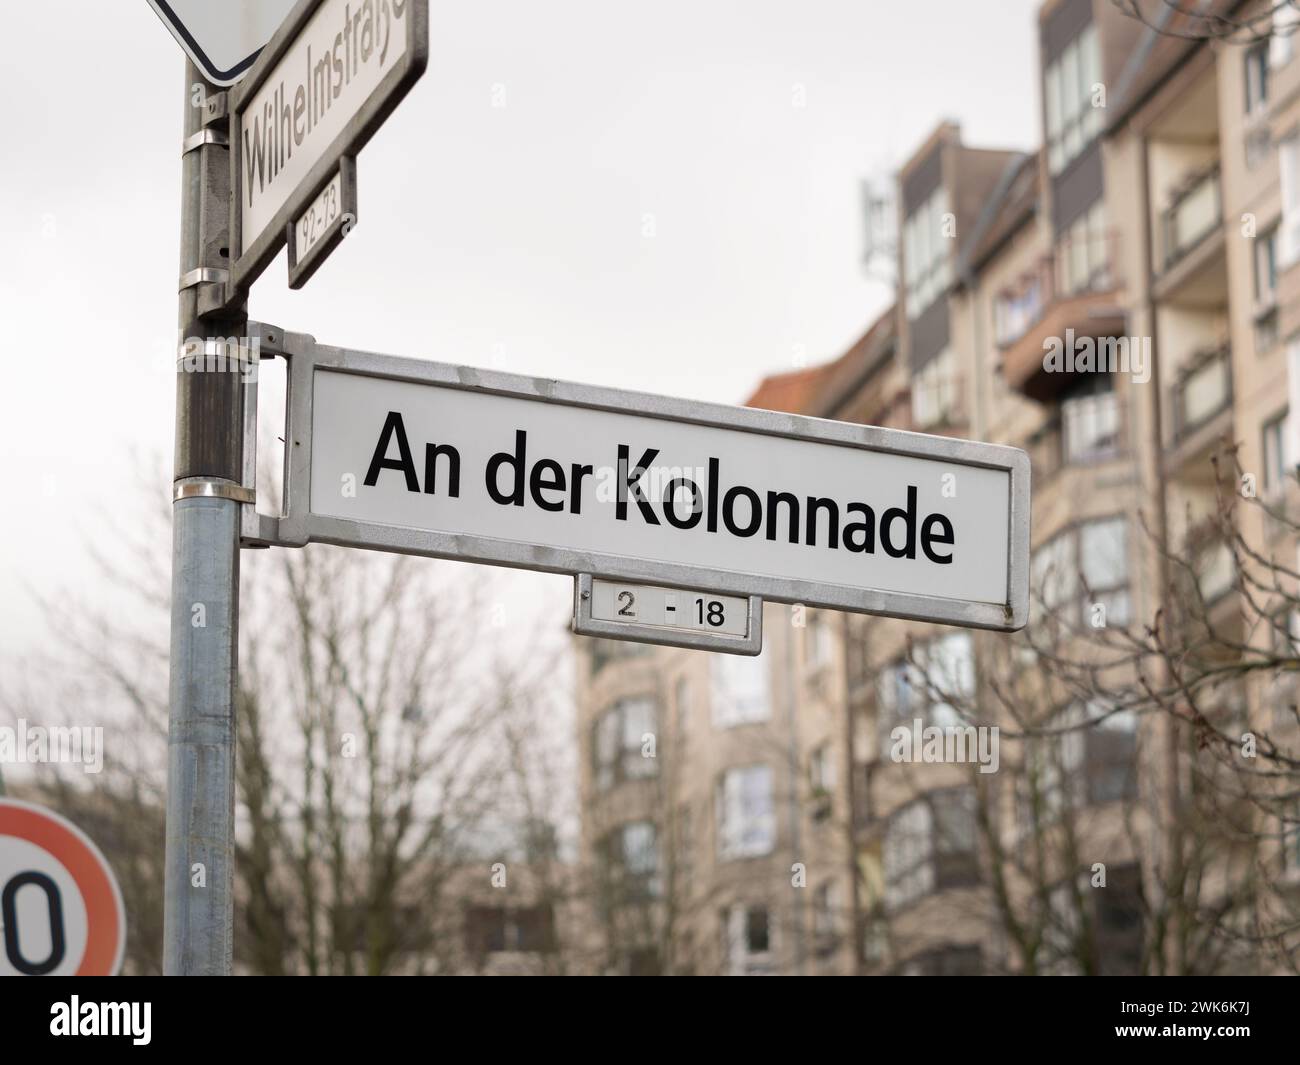 Via An der Kolonnade a Berlino. Cartello con il nome della strada all'incrocio. Nella zona si trova un quartiere residenziale con architettura socialista. Foto Stock